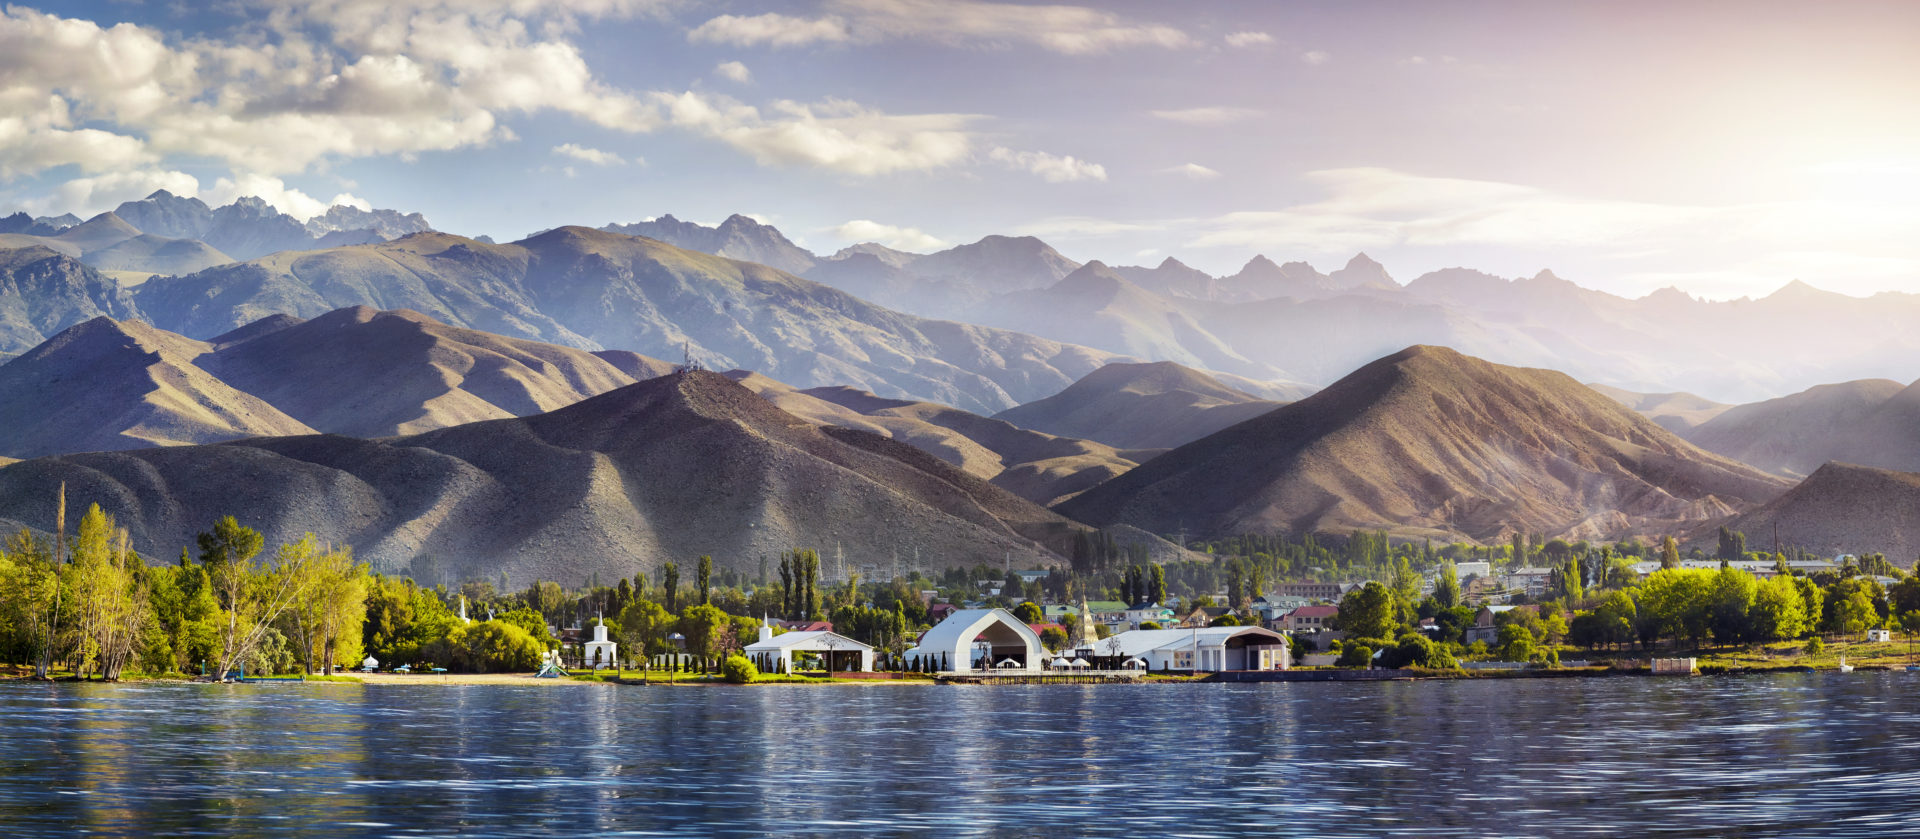 Complexe culturel Ruh Ordo au bord du lac Issyk Kul à l'arrière-plan des montagnes à Cholpon Ata, voyage au Kirghizistan.